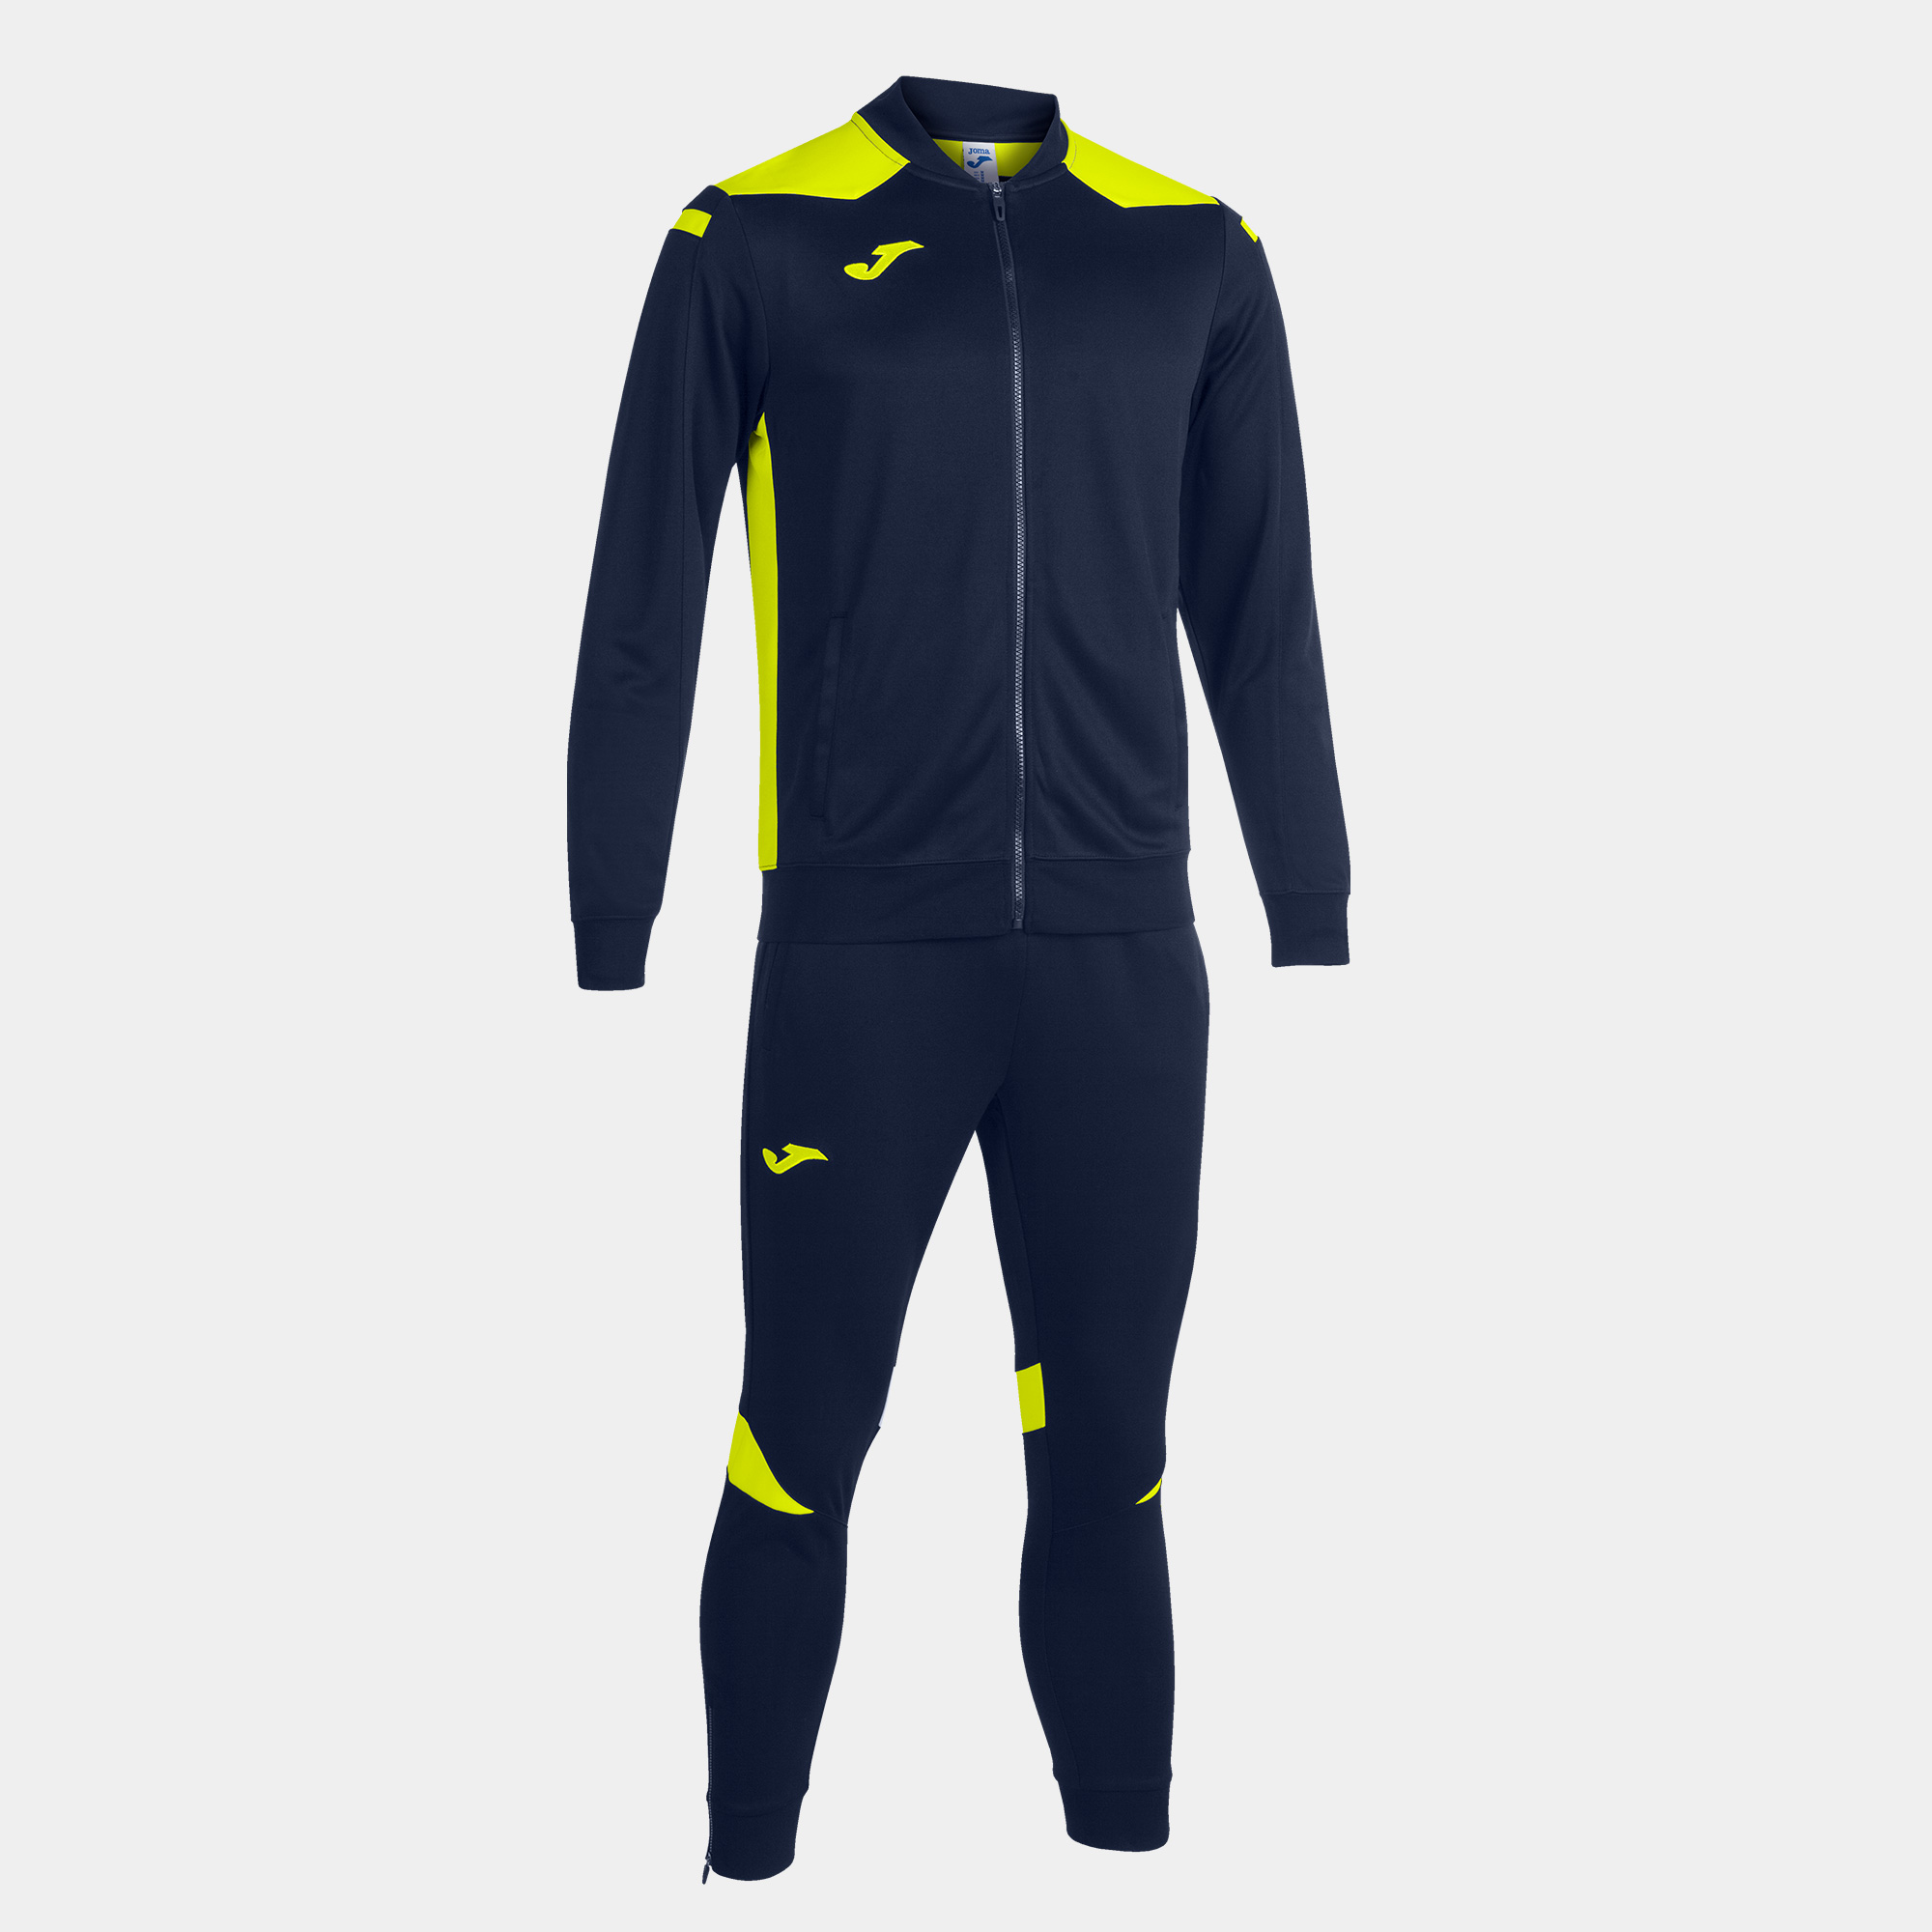 Спортивний костюм чоловічий Joma CHAMPION VI Темно-синій/Світло-жовтий